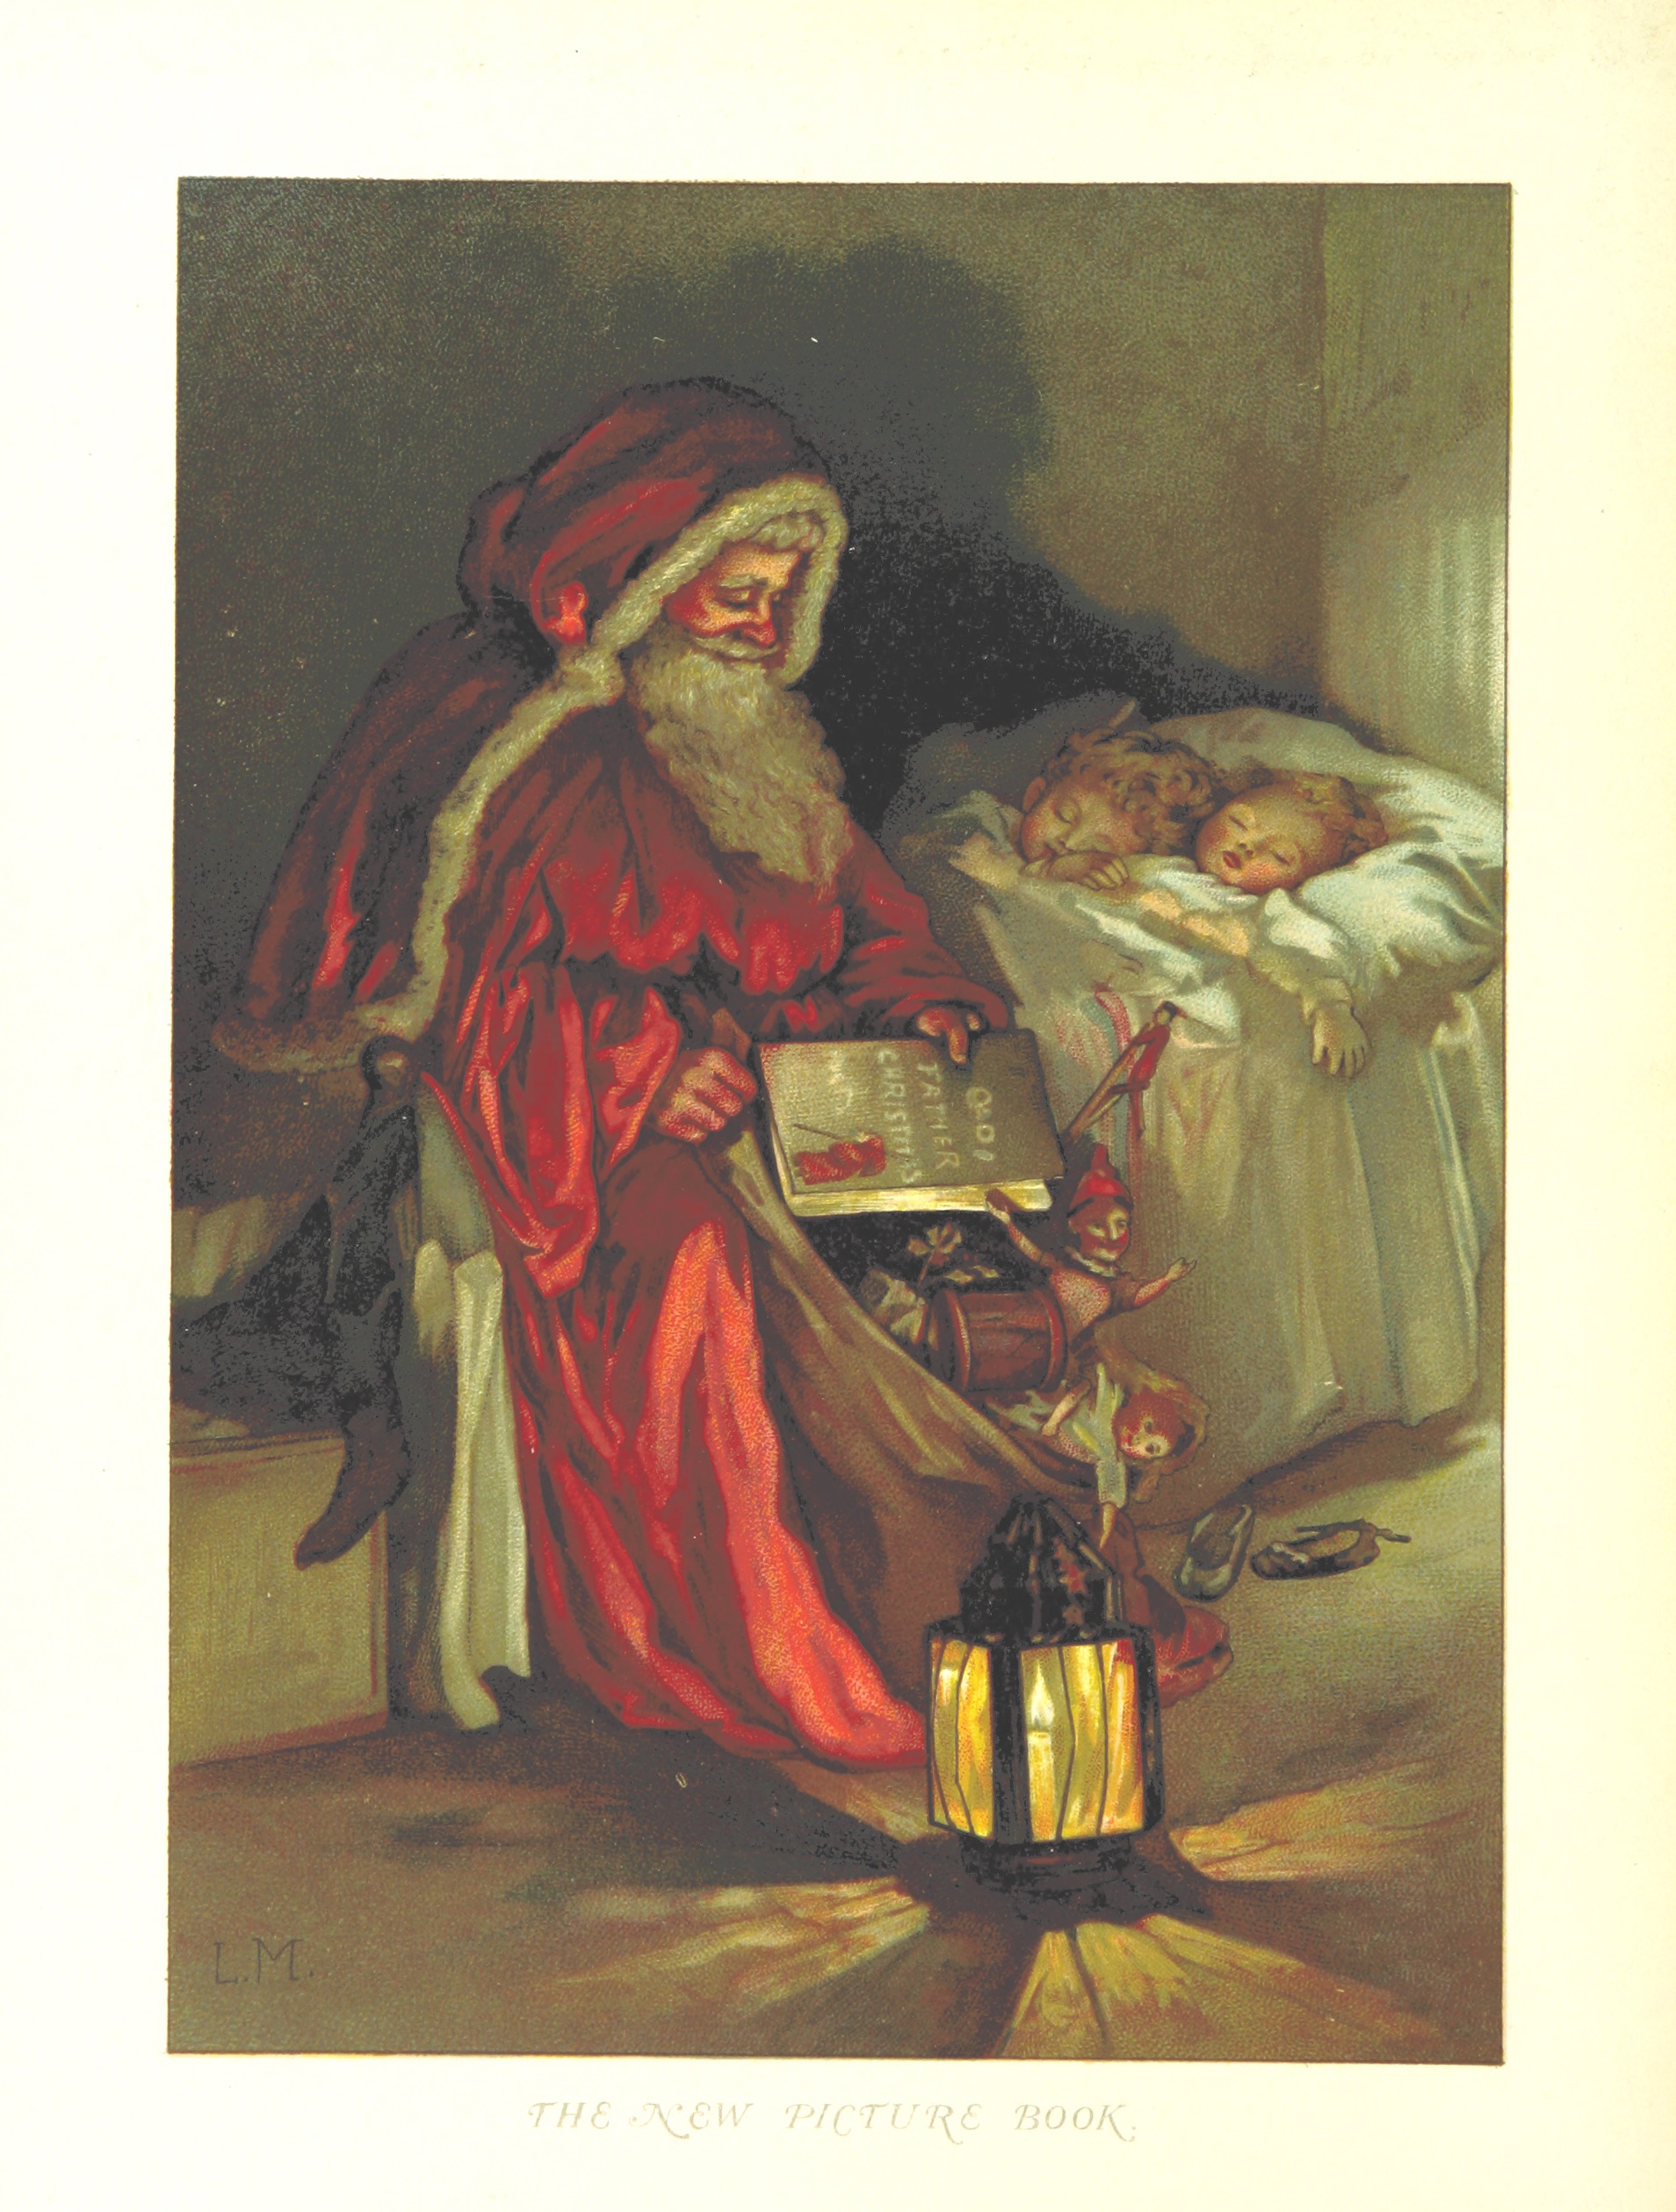 Święty Mikołaj przychodzi w nocy, pocztówka ze zbiorów British Library, 1888, flic.kr/p/i4hecD